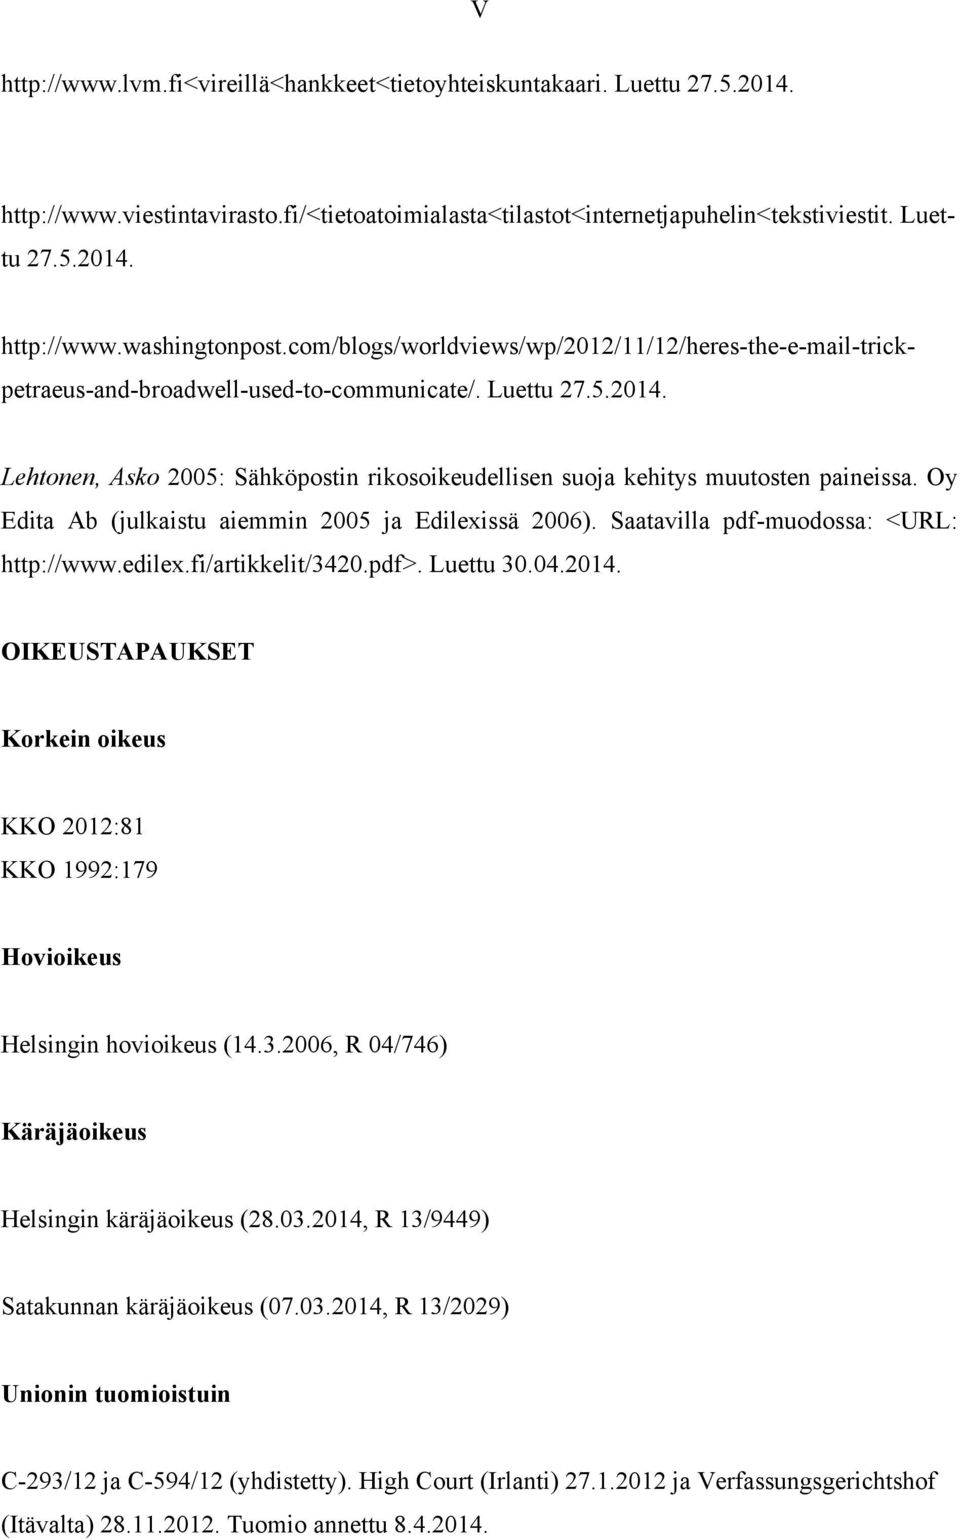 Lehtonen, Asko 2005: Sähköpostin rikosoikeudellisen suoja kehitys muutosten paineissa. Oy Edita Ab (julkaistu aiemmin 2005 ja Edilexissä 2006). Saatavilla pdf-muodossa: <URL: http://www.edilex.